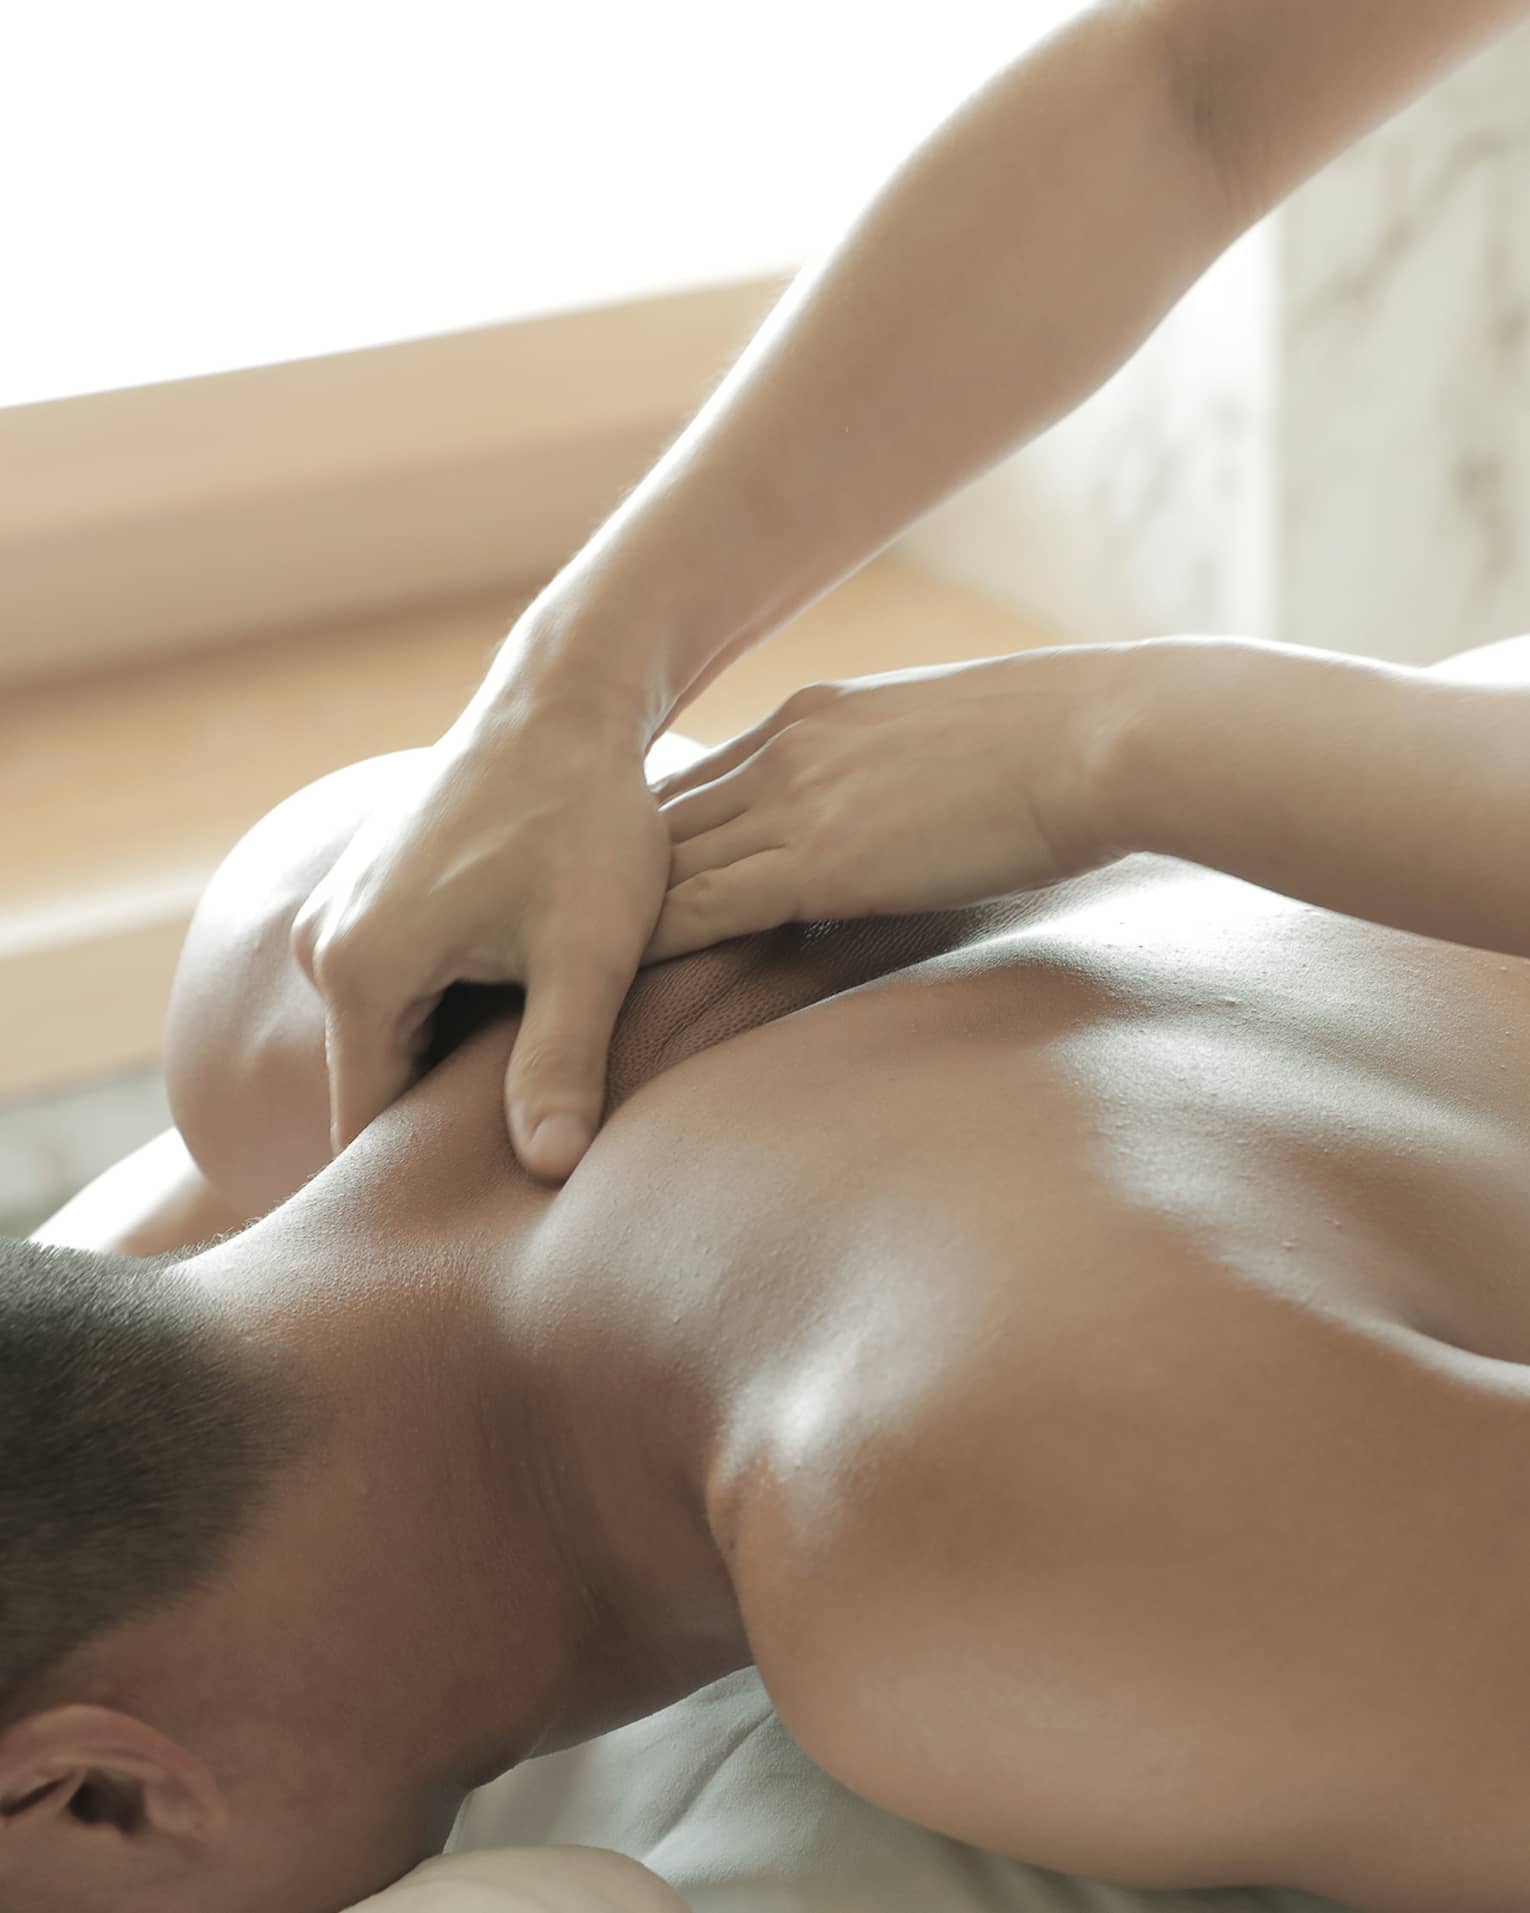 Spa masseuse massages man's bare back, shoulders